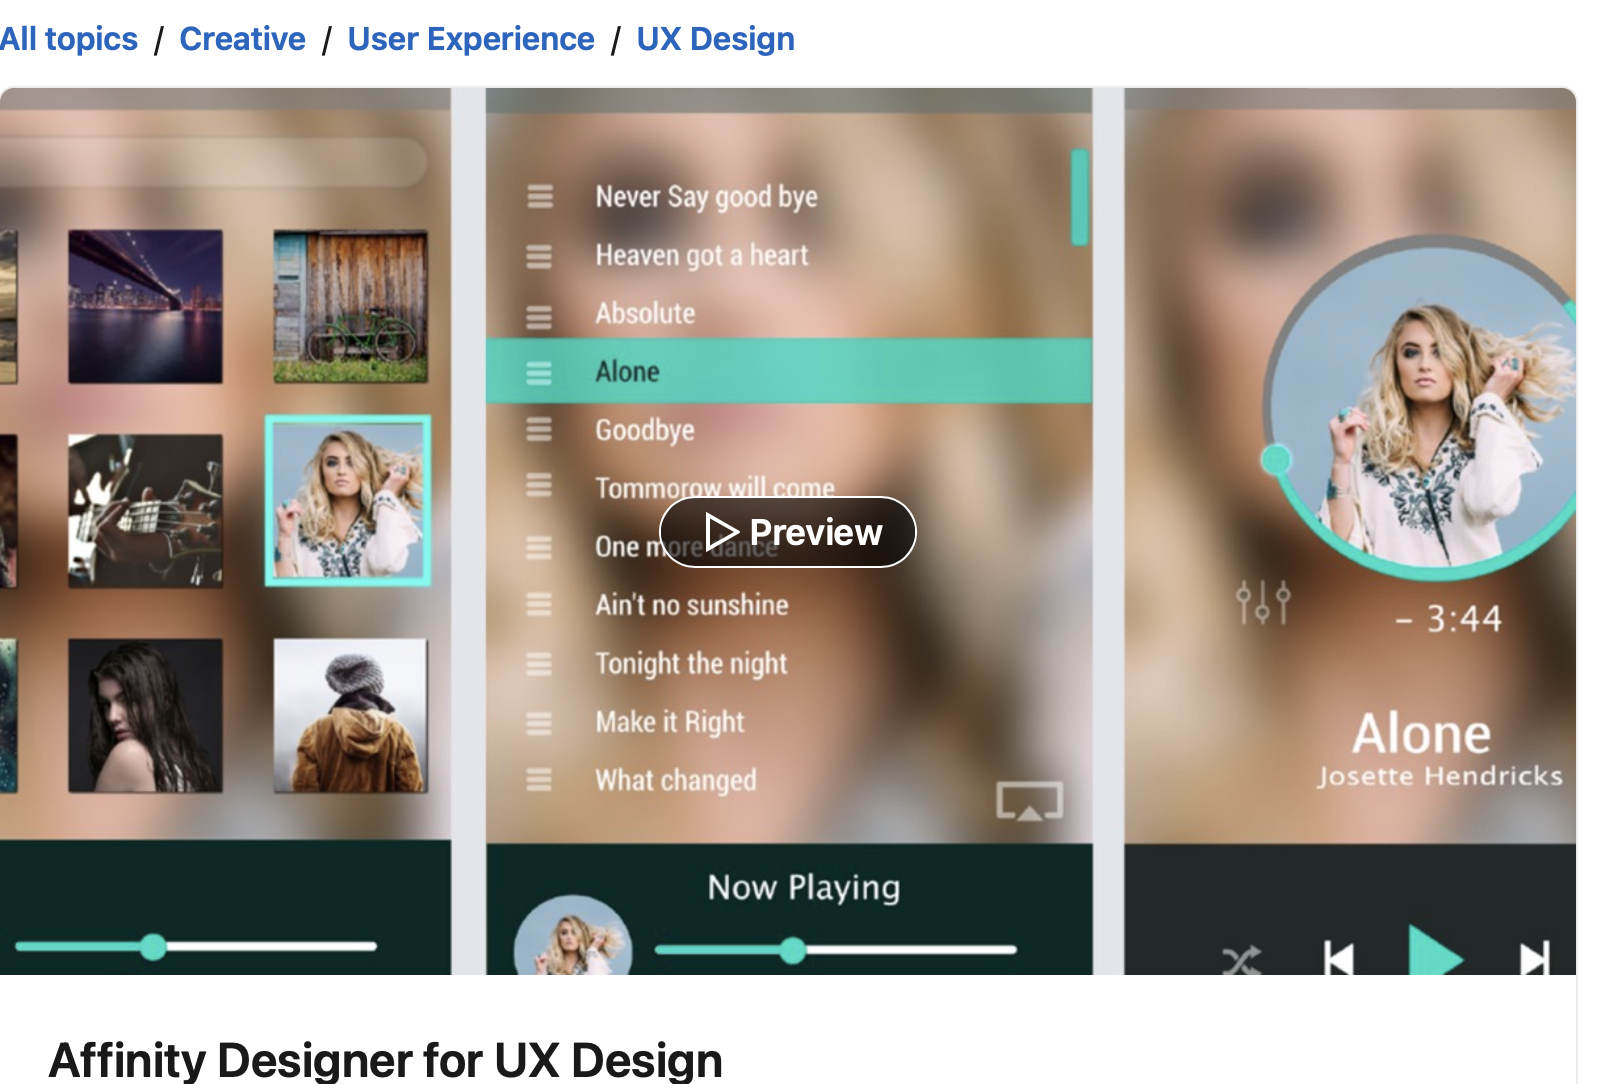 Affinity Designer for UX Design